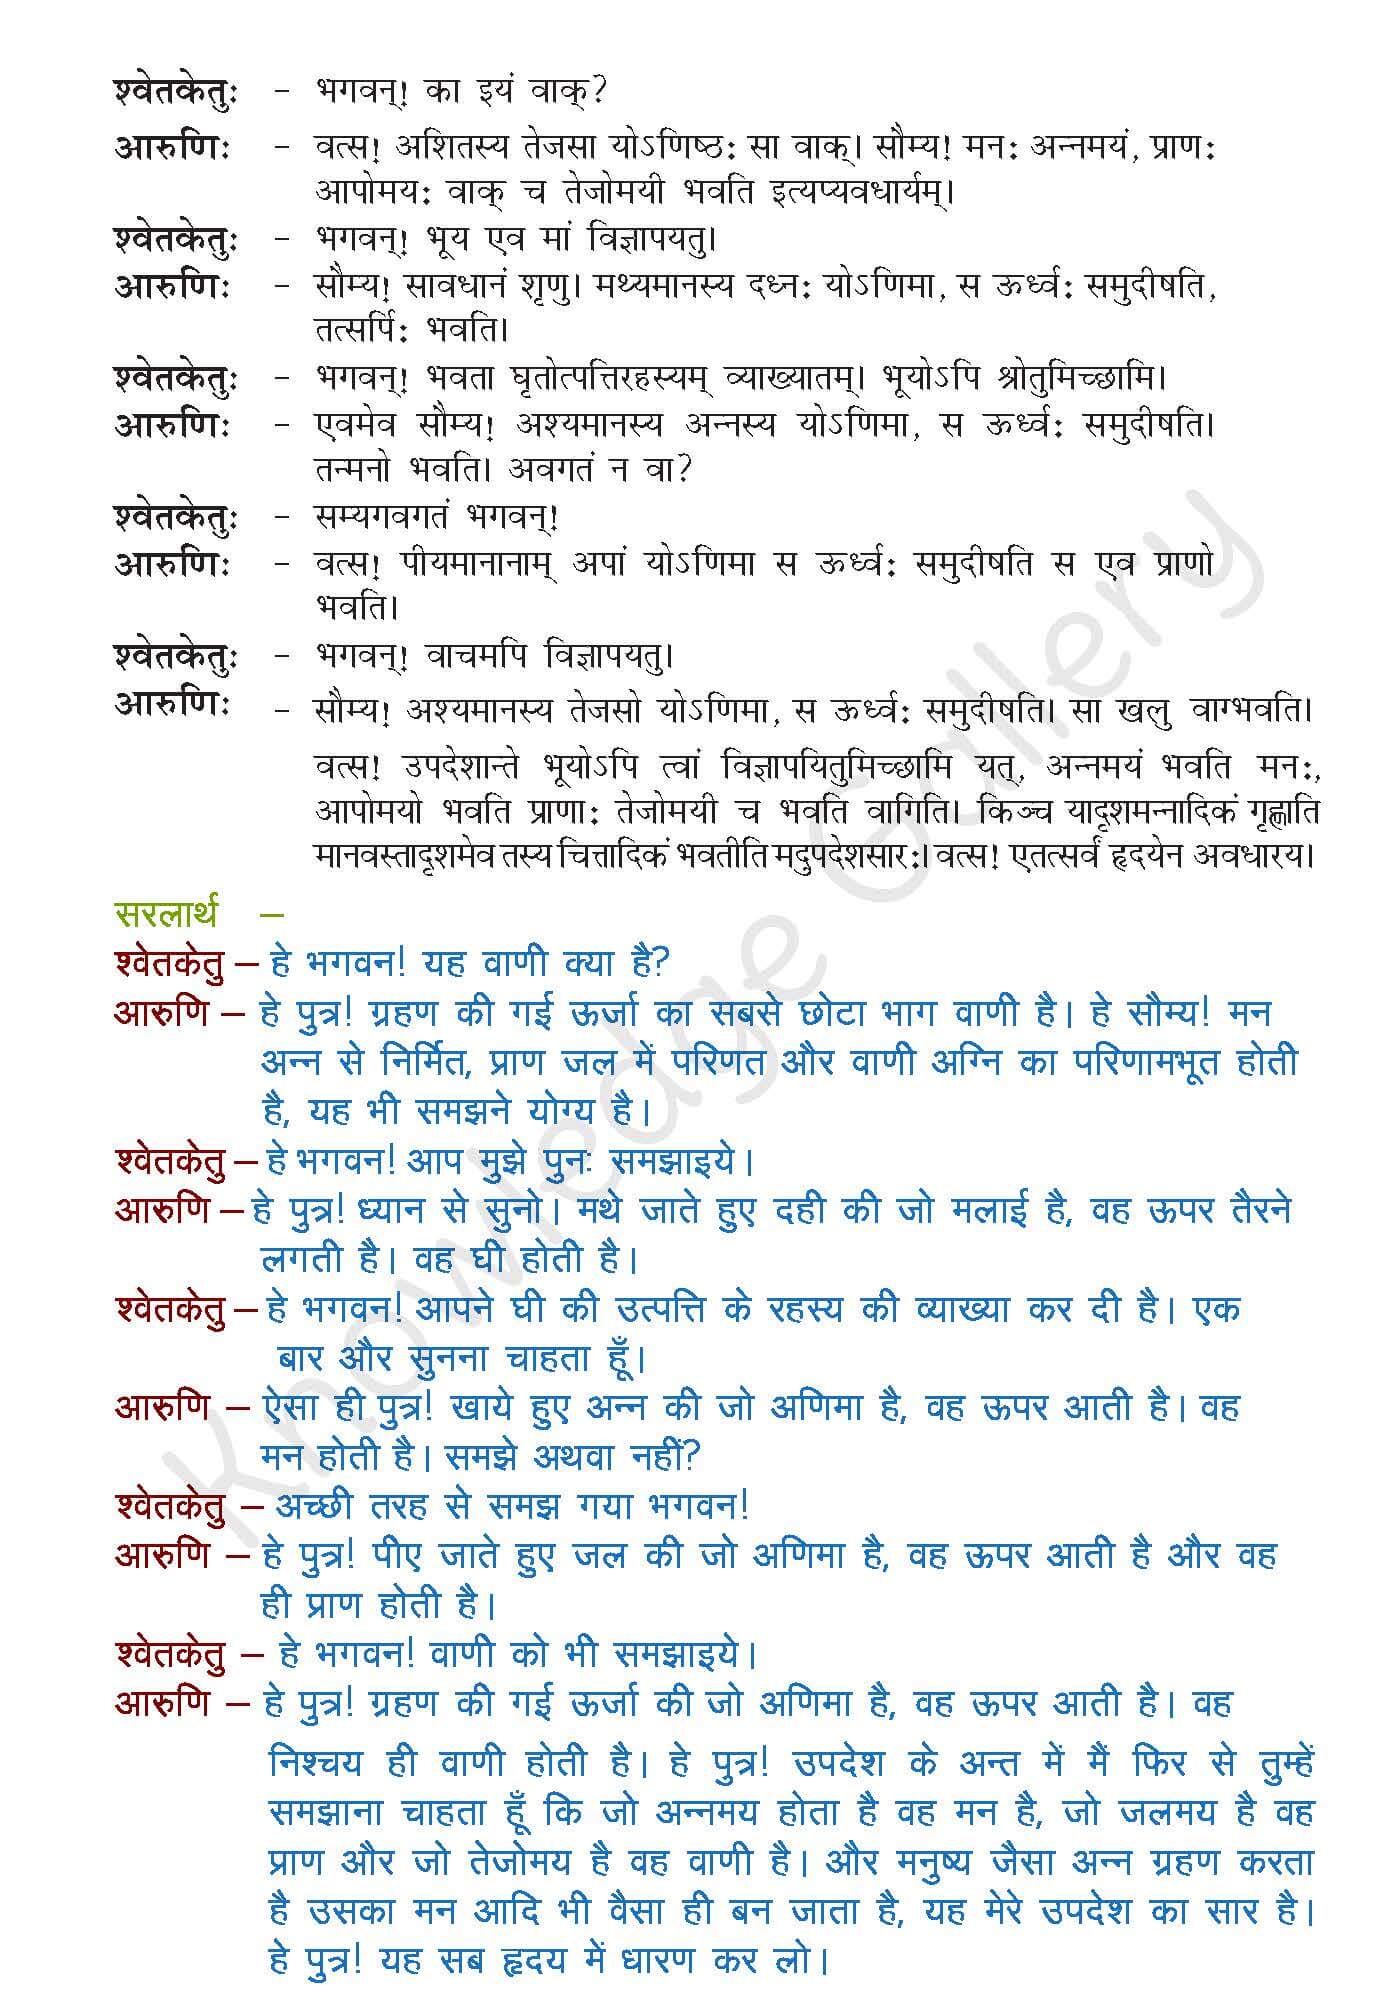 NCERT Solution For Class 9 Sanskrit Chapter 10 part 2